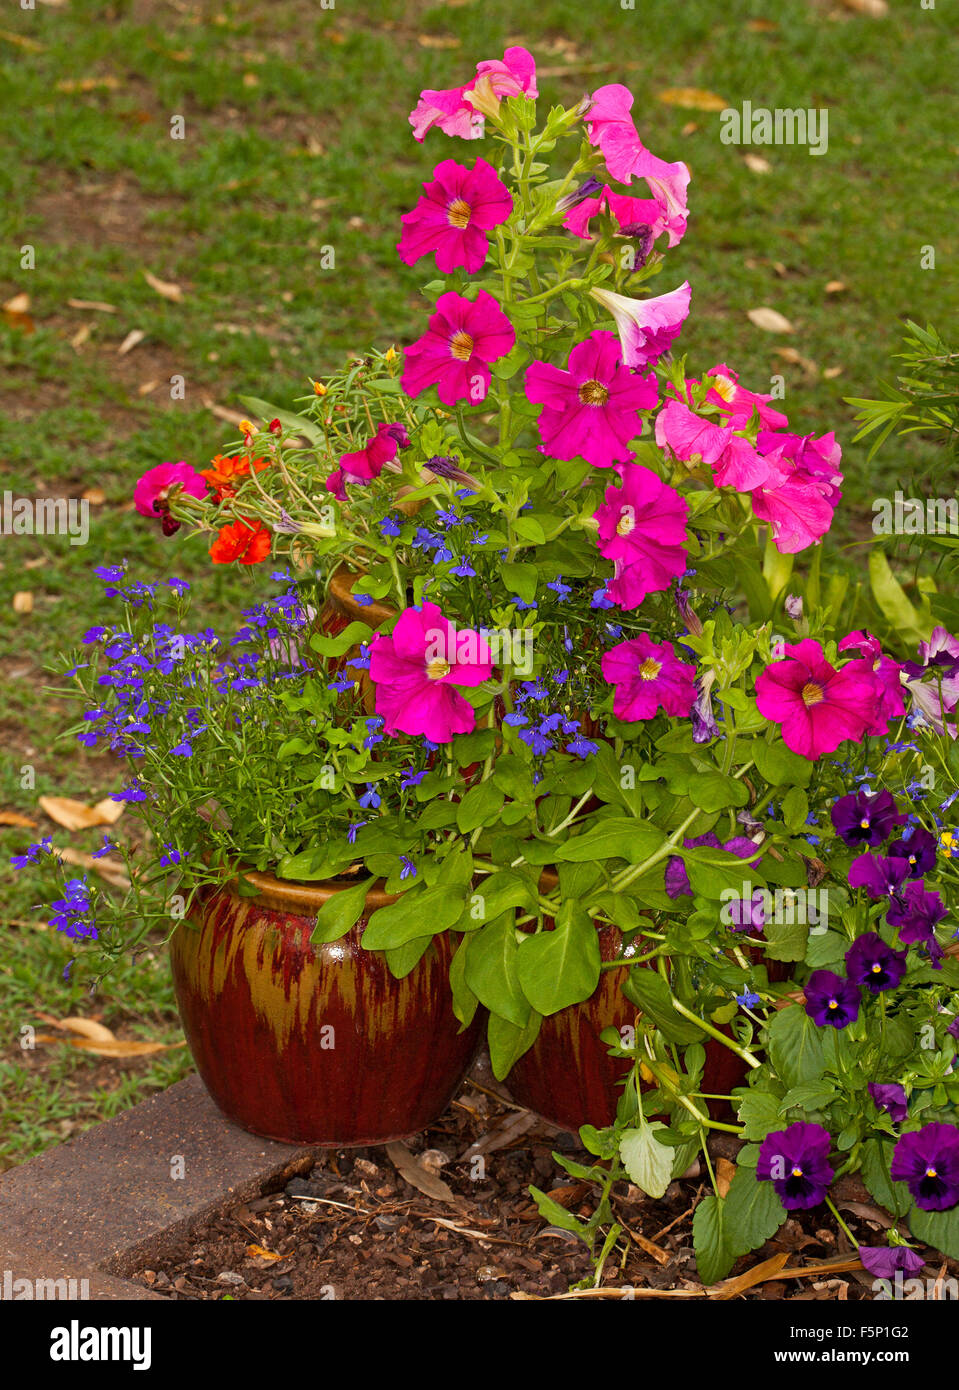 Marrone rossiccio e contenitore in ceramica con la massa della molla colorata fioritura annuari, blu lobelia e brillanti nelle petunie rosa Foto Stock